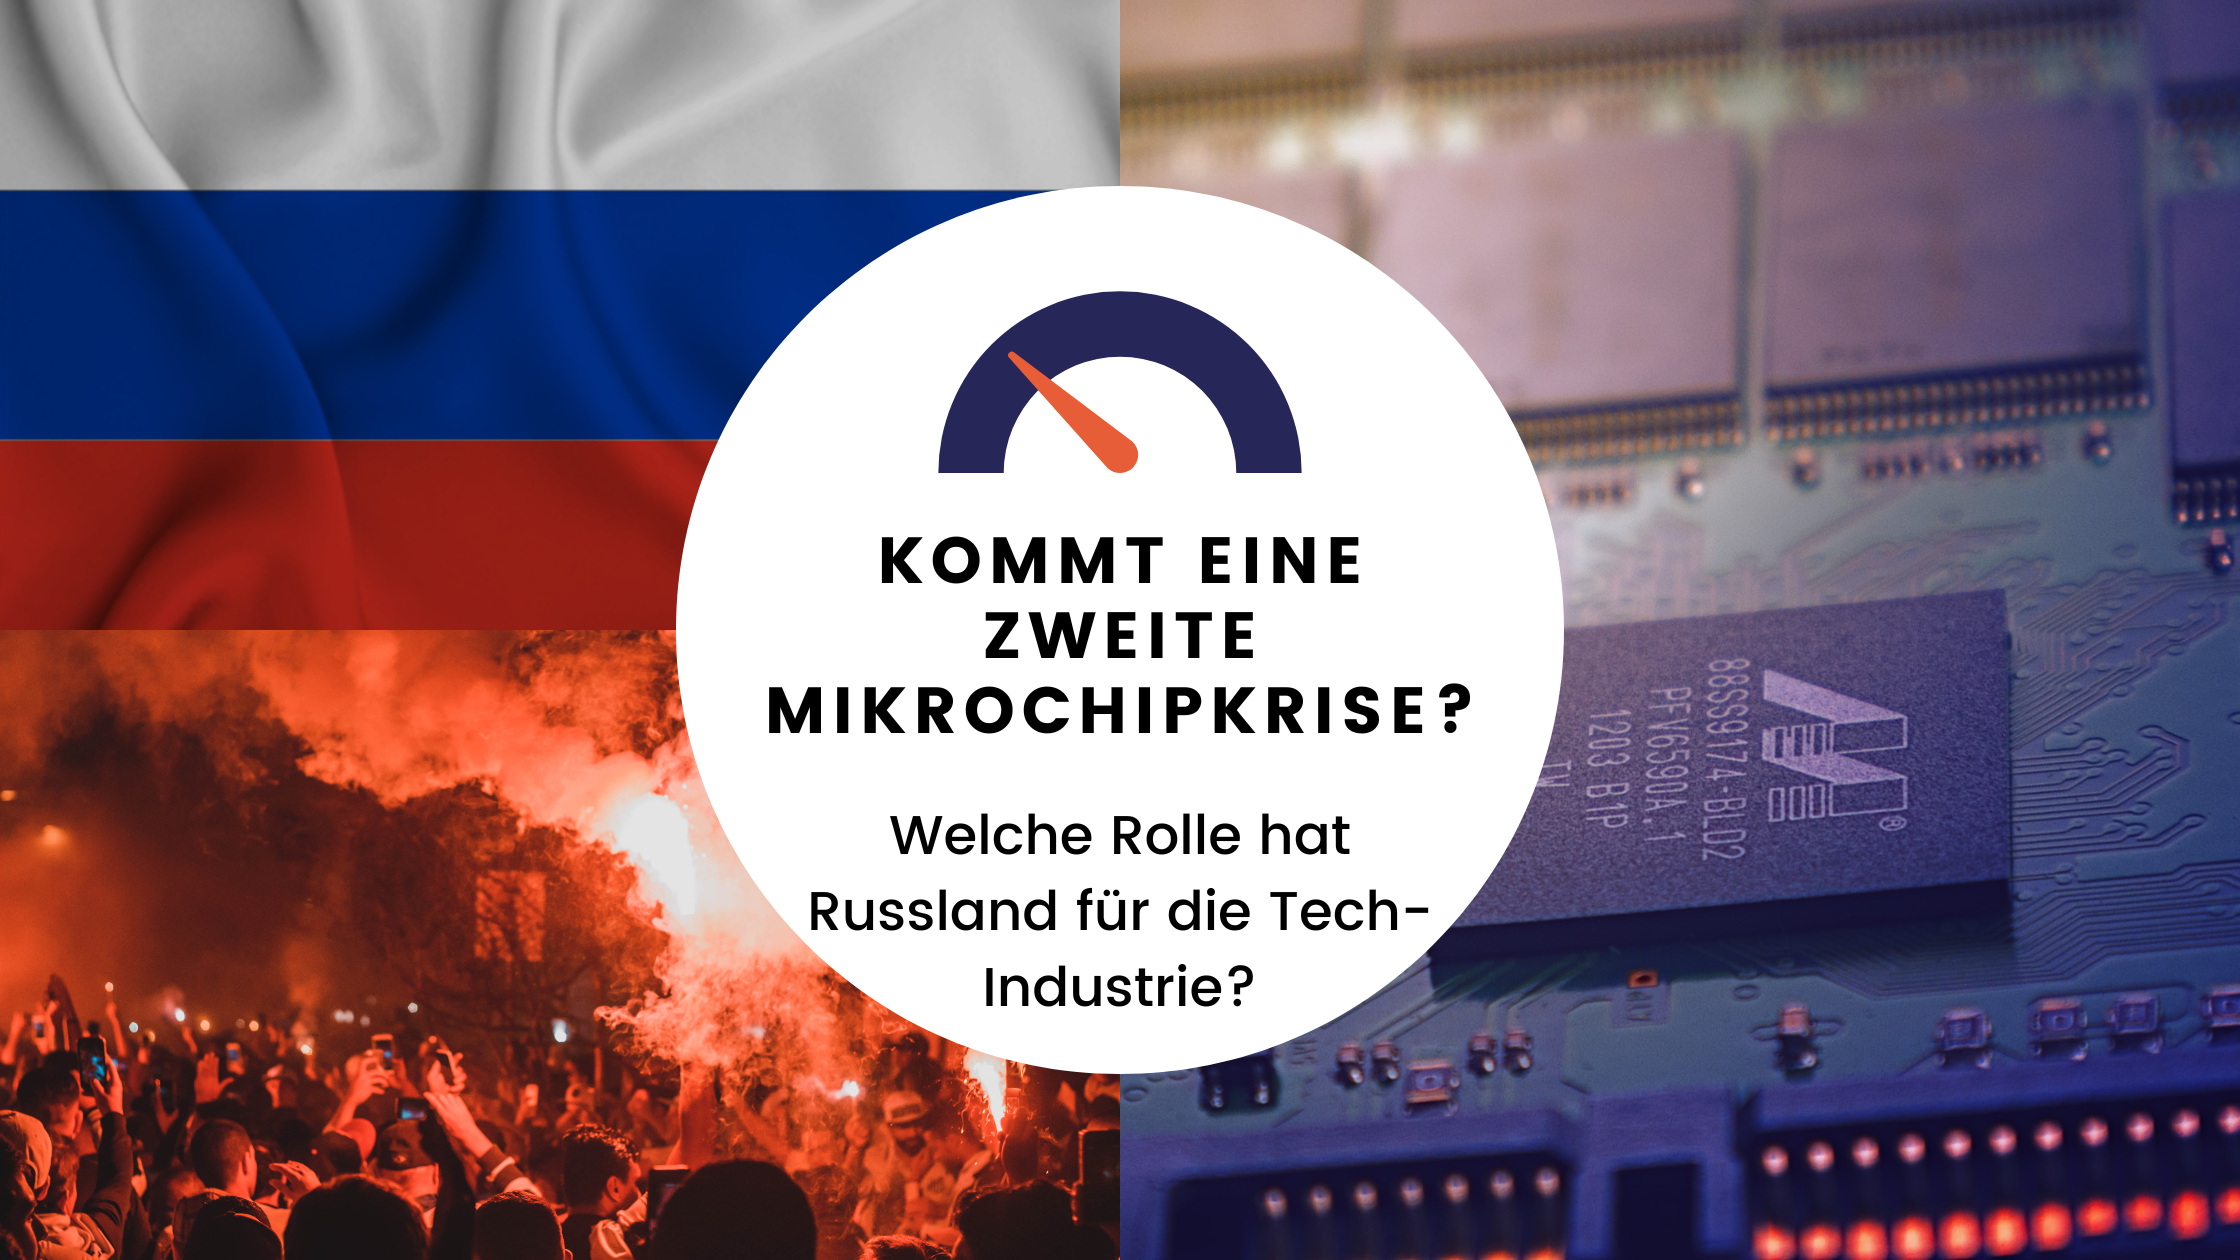 Kommt eine zweite Mikrochipkrise? Welche Rolle hat Russland für die Tech-Industrie?